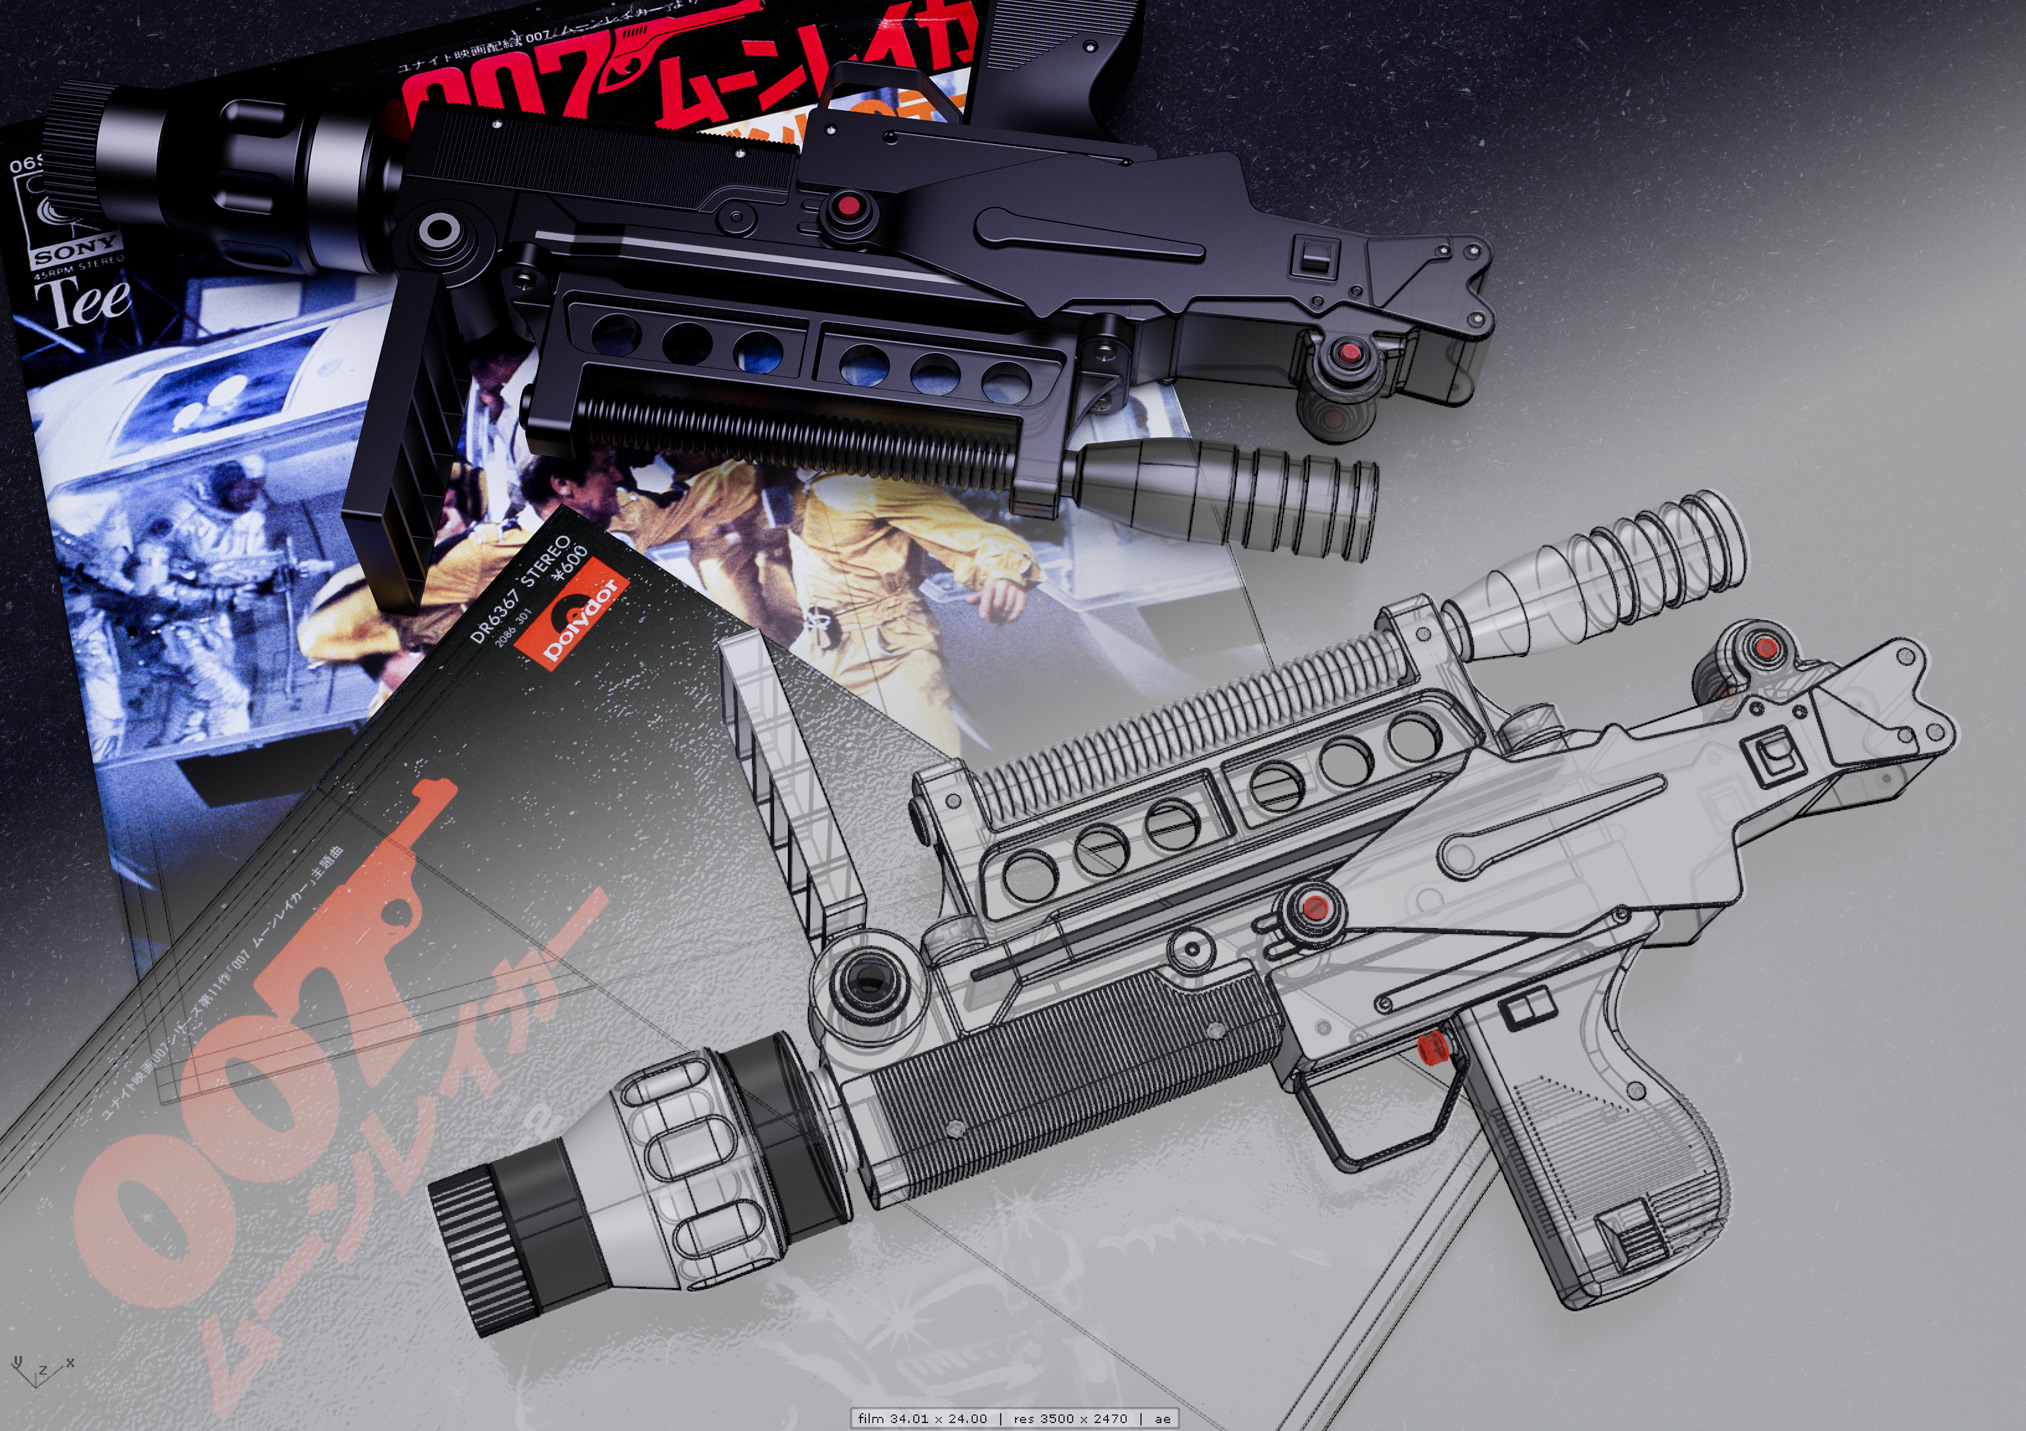 007 Laser gun found in Moonraker.